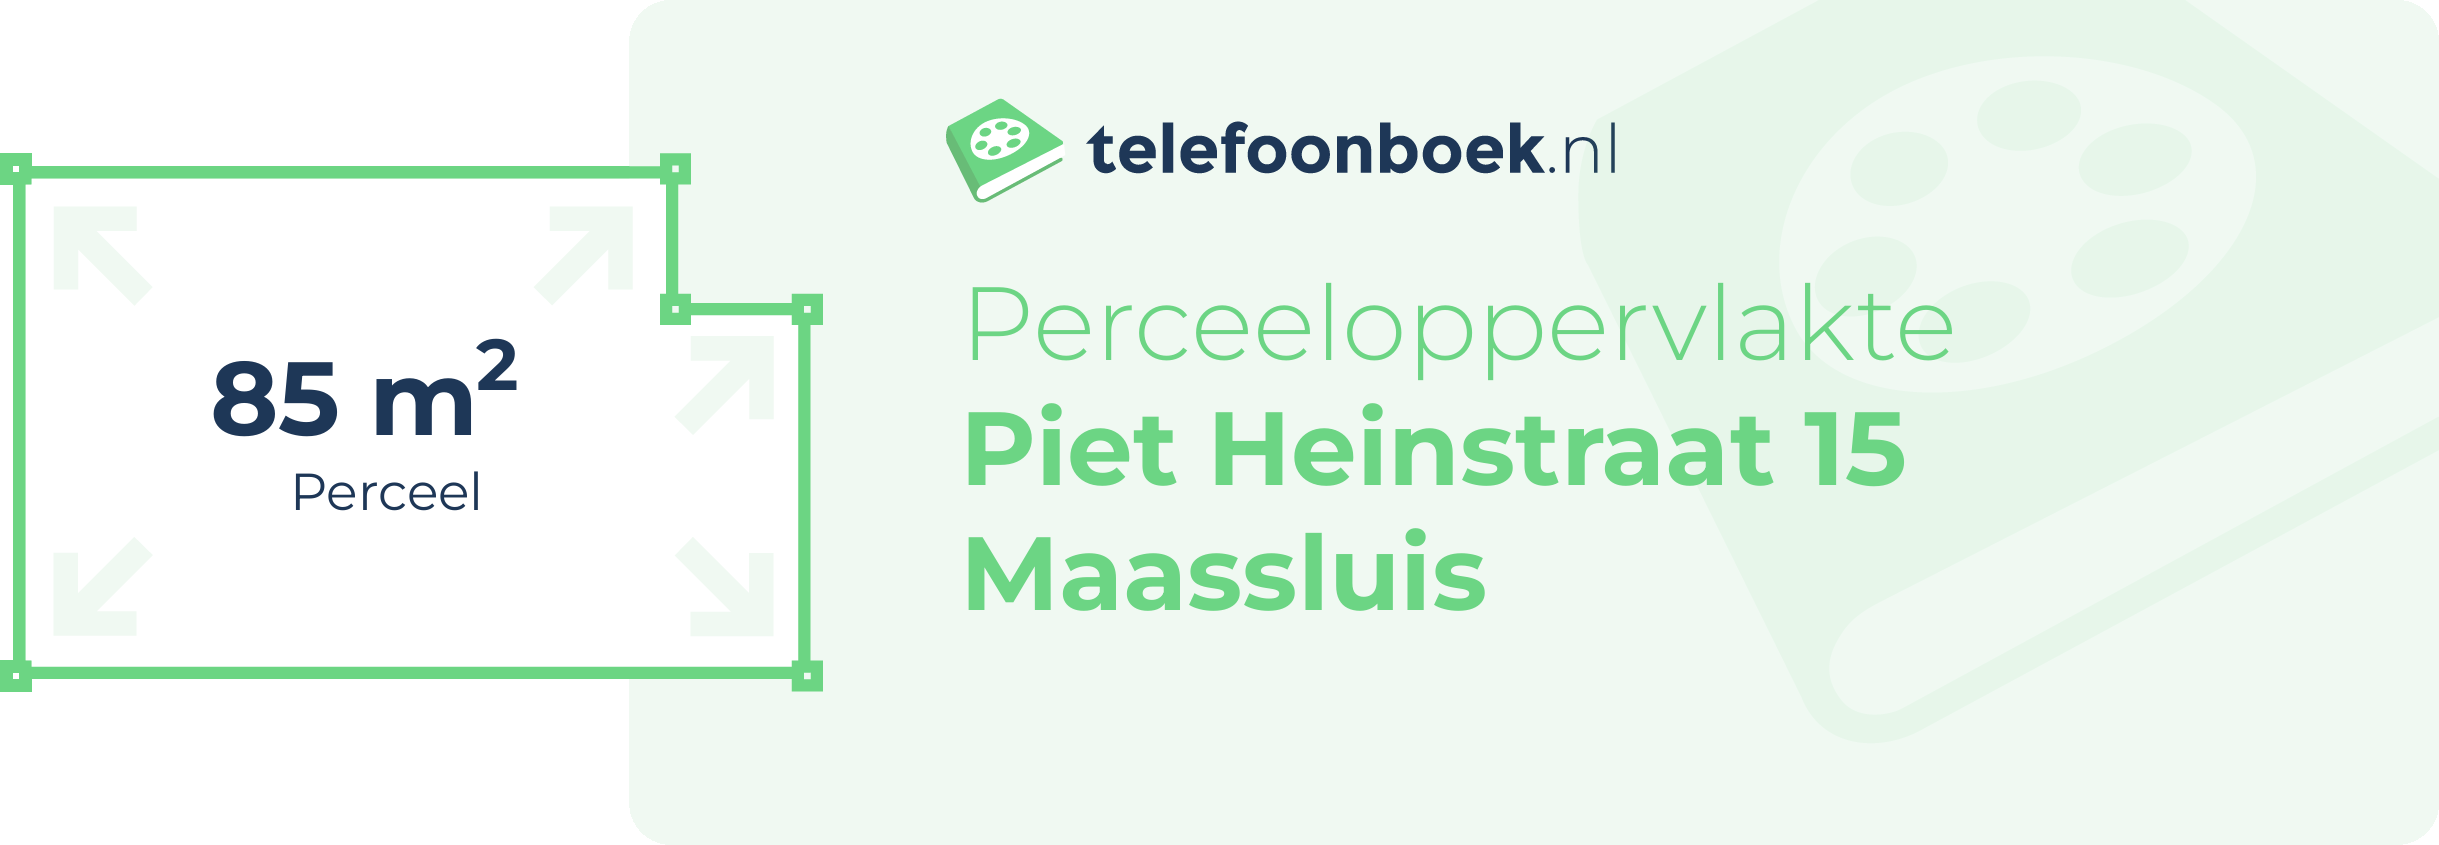 Perceeloppervlakte Piet Heinstraat 15 Maassluis